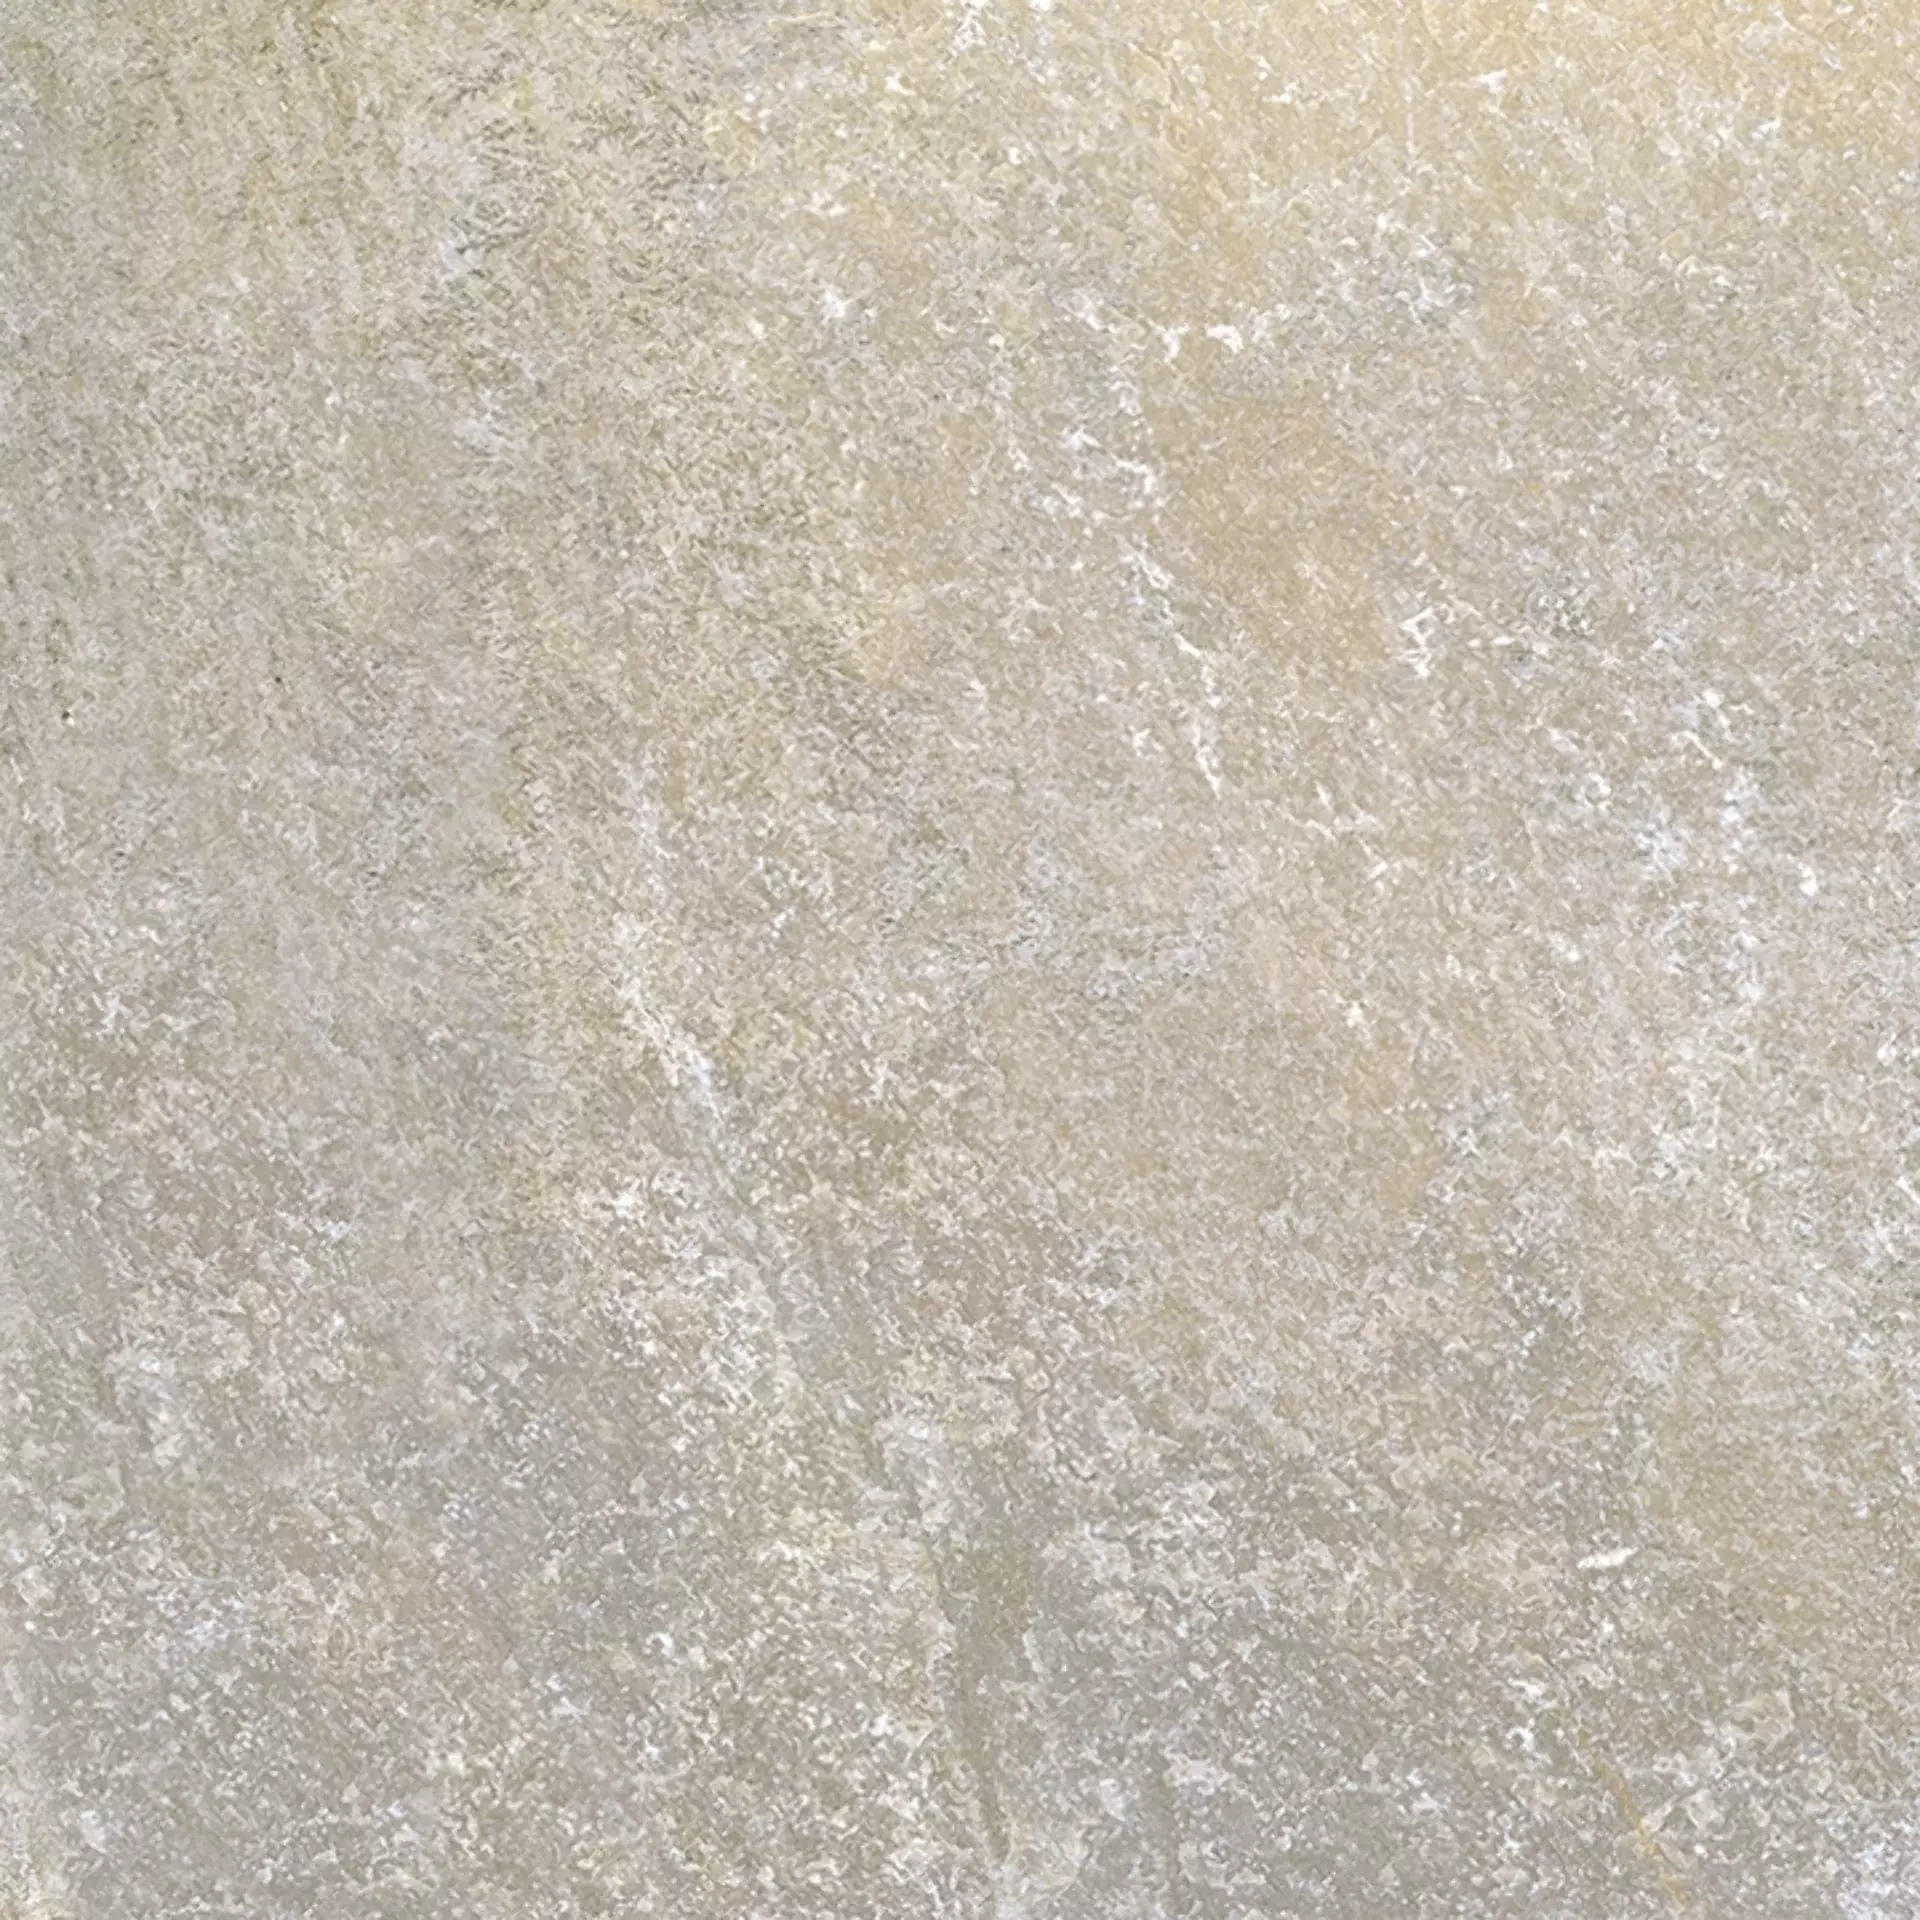 Sichenia Pave' Quarz Esterno Argento Grip 0RS6627 60x60cm rectified 20mm